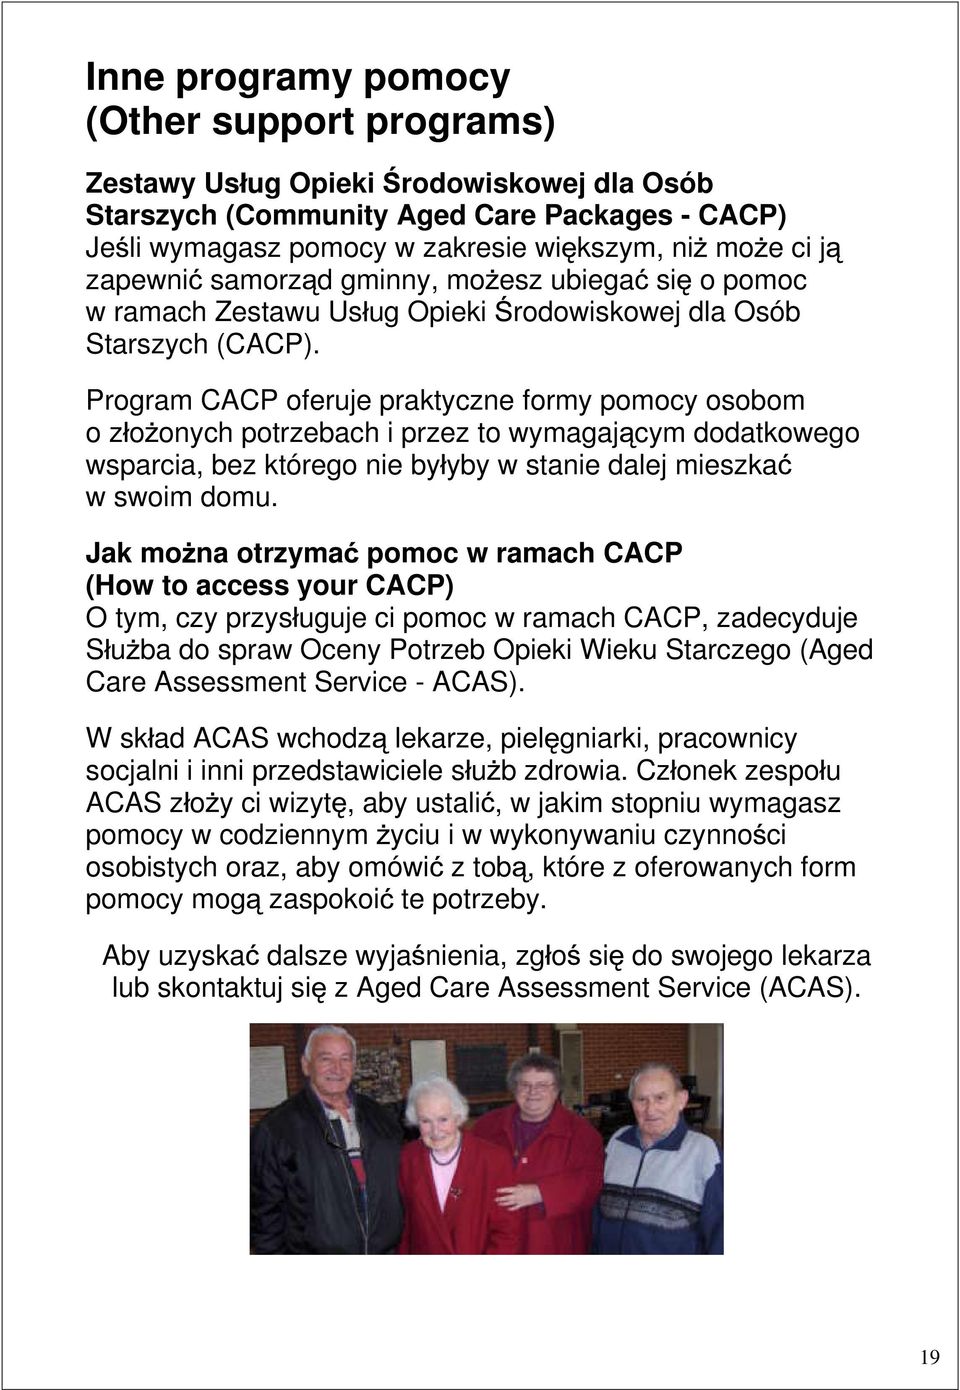 Program CACP oferuje praktyczne formy pomocy osobom o z o onych potrzebach i przez to wymagaj cym dodatkowego wsparcia, bez którego nie by yby w stanie dalej mieszka w swoim domu.